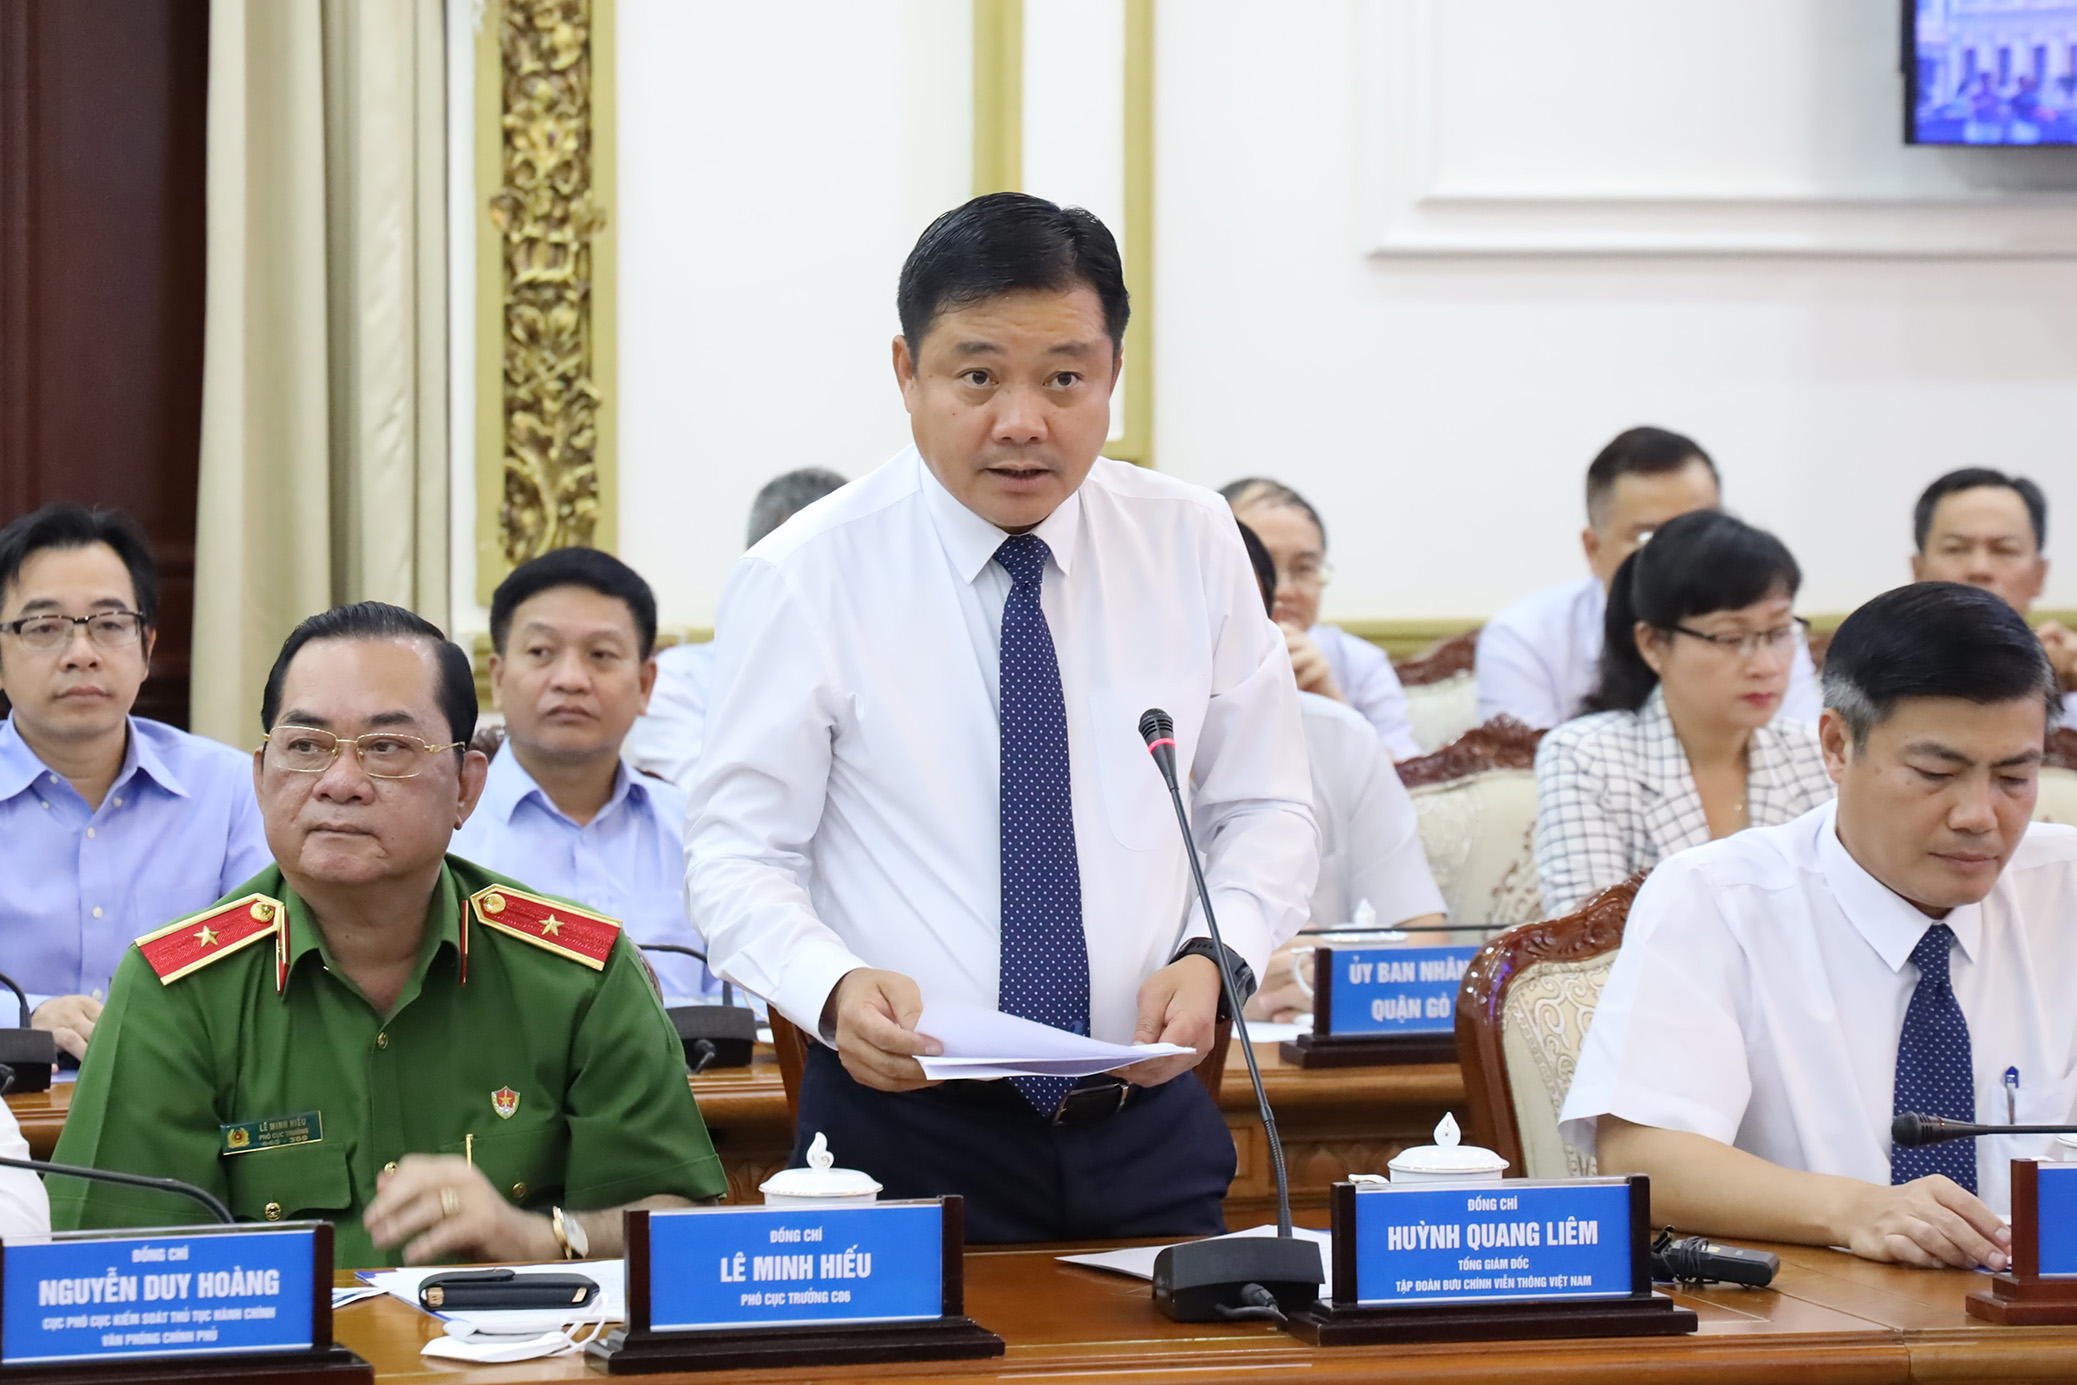 Đồng chí Huỳnh Quang Liêm - Tổng giám đốc Tập đoàn VNPT phát biểu.